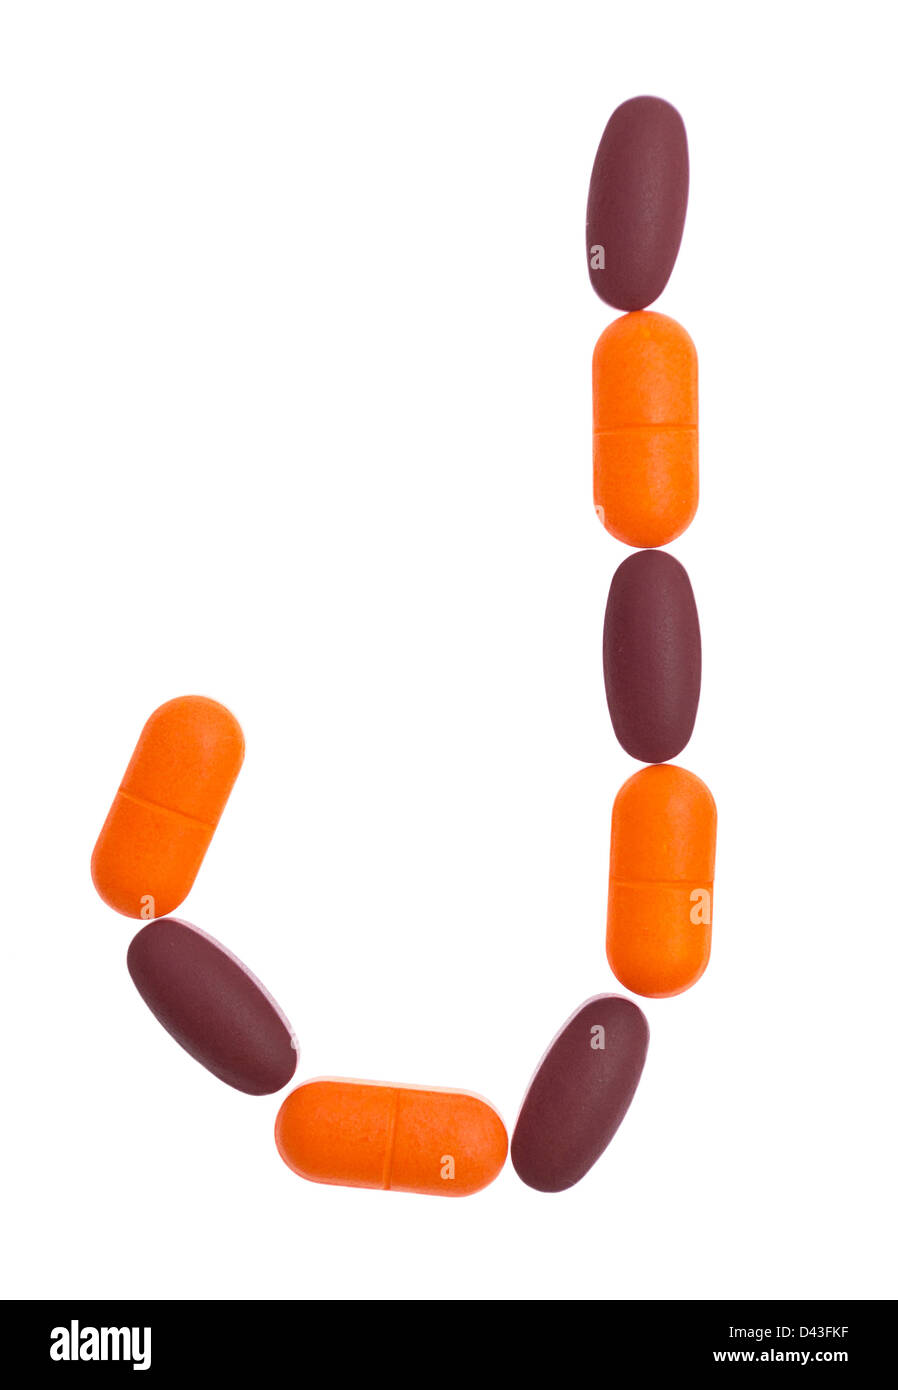 Das Alphabet der Buchstabe O gemacht von medizinischen Tabletten  Stockfotografie - Alamy